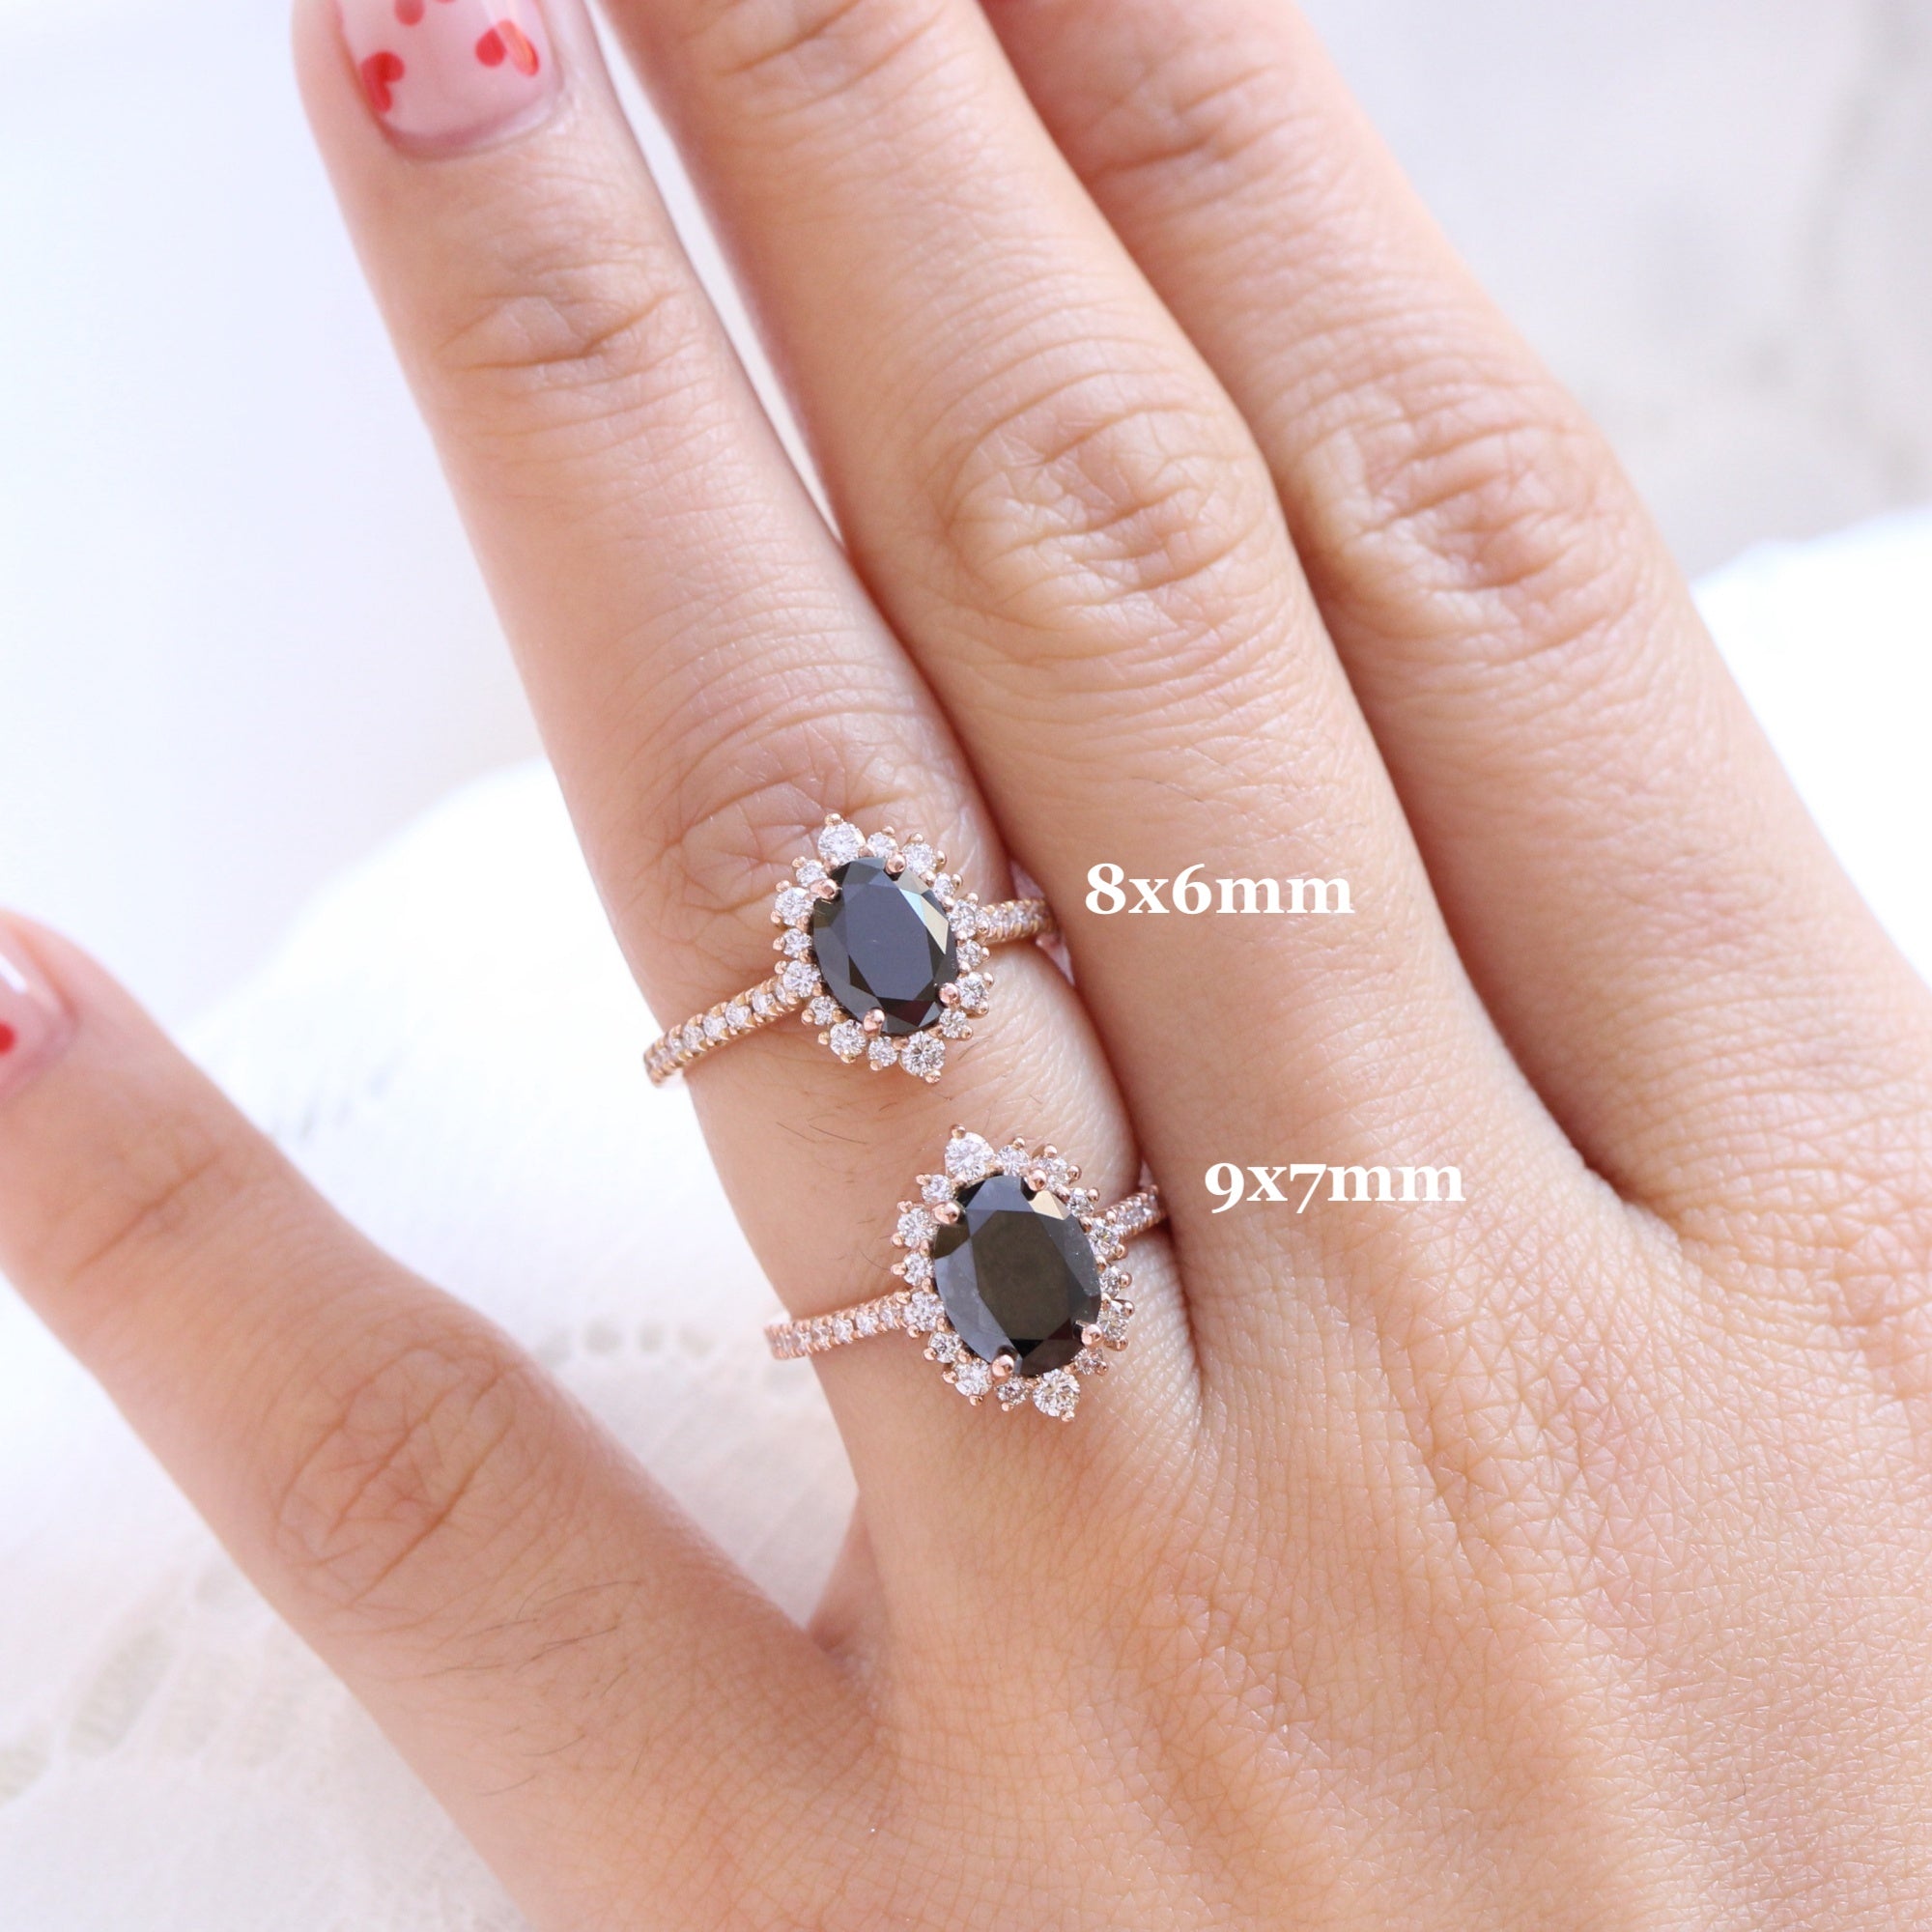 Large black diamond ring vs 1.50 carat oval black diamond ring rose gold la more design jewelry